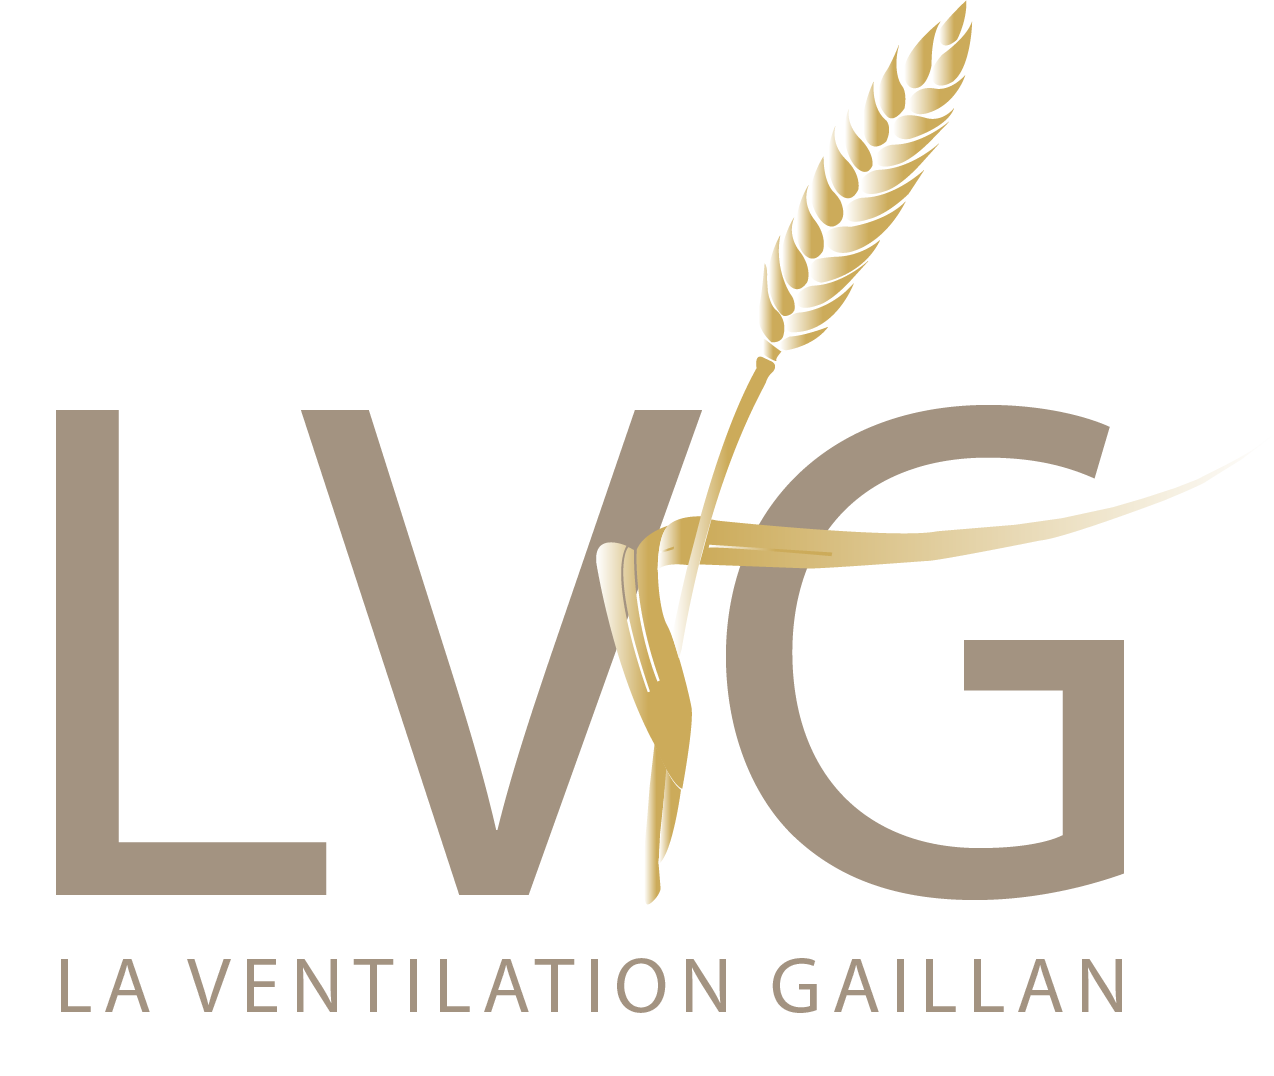 lvg-ventilation